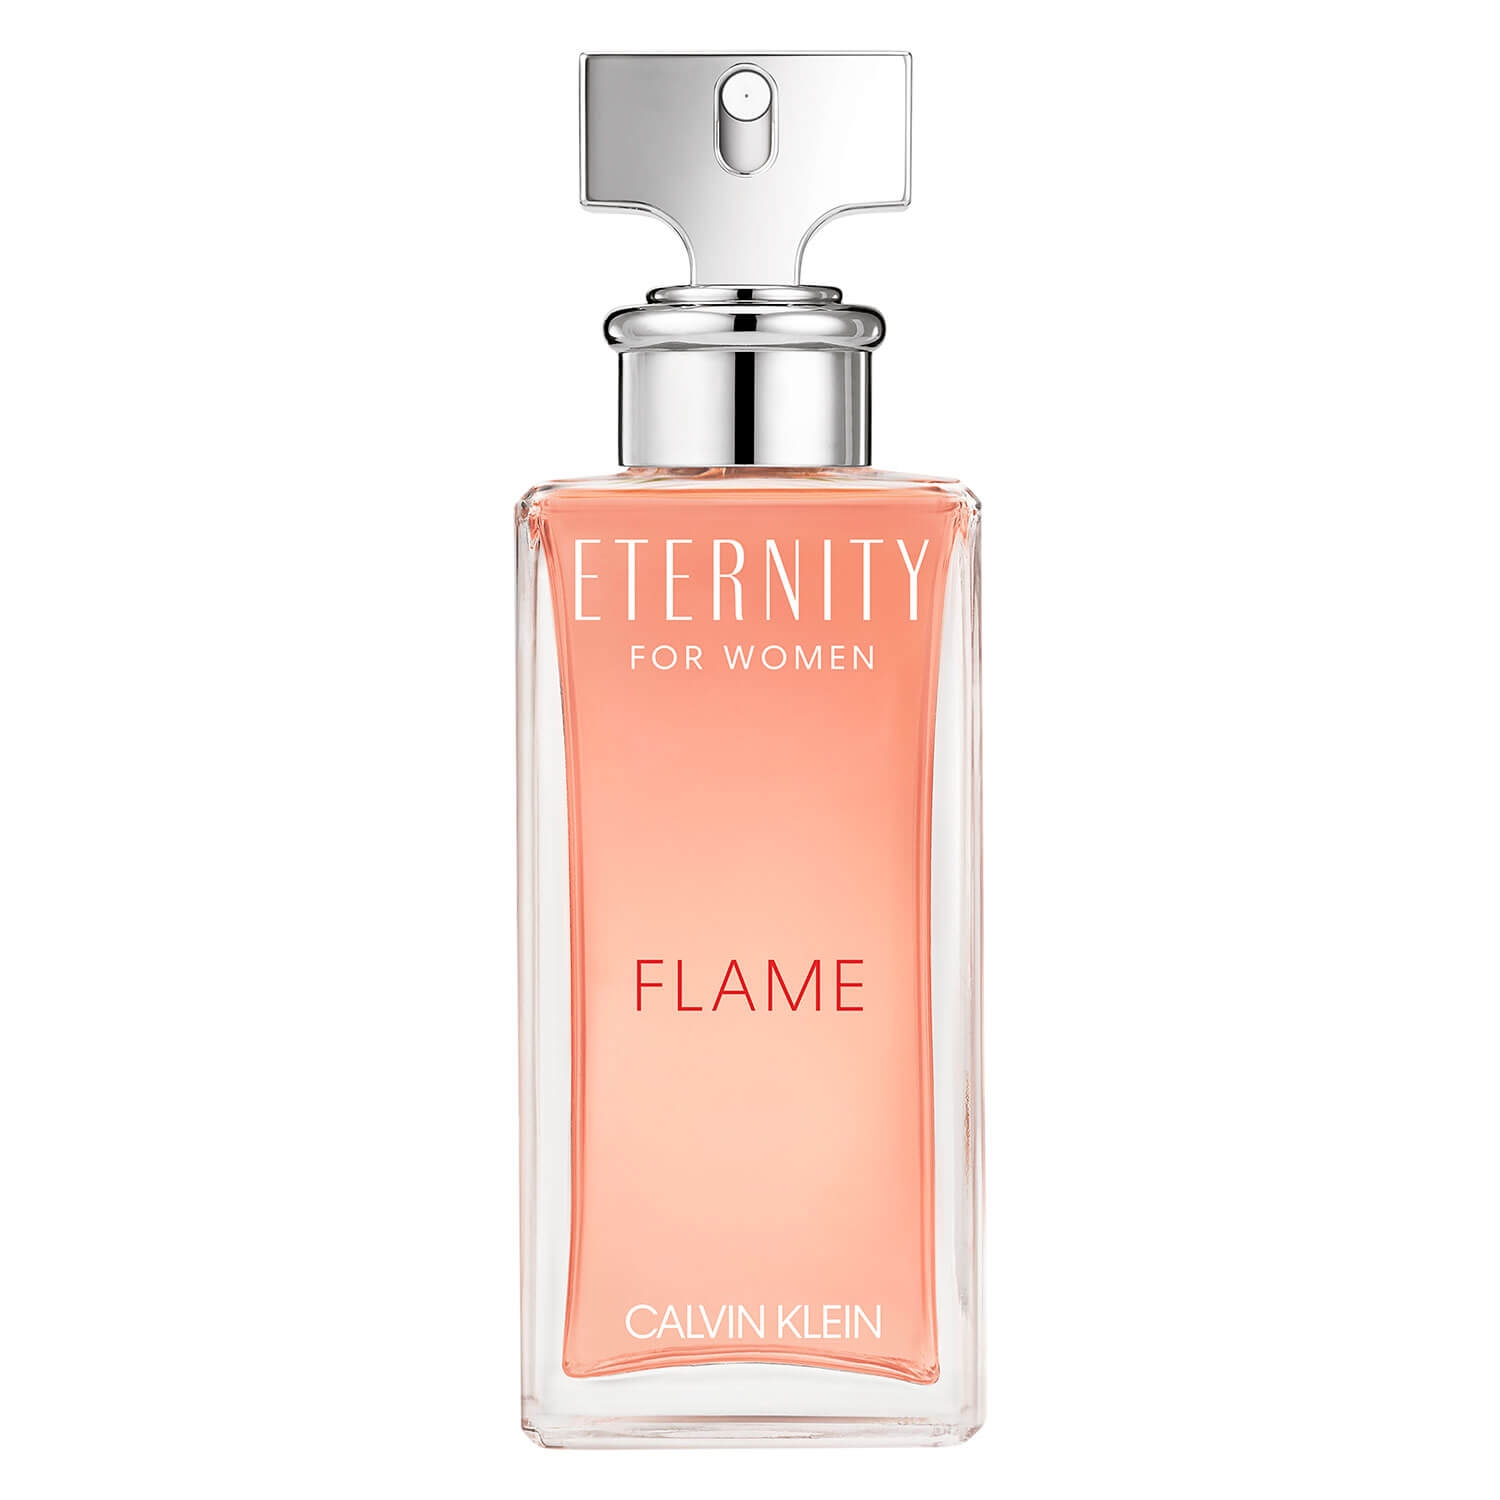 Produktbild von Eternity - For Women Flame Eau de Parfum